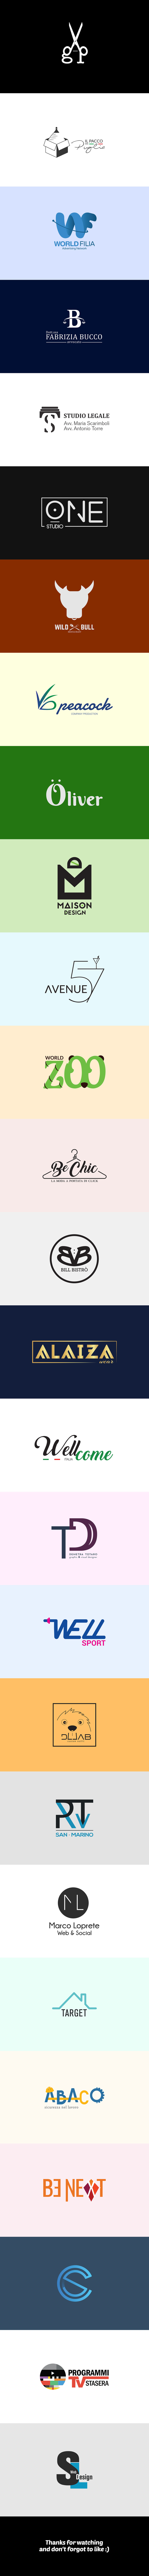 logo loghi il branding  illustrazione design del logo logo folio raccolta logo minimo votazione symbols